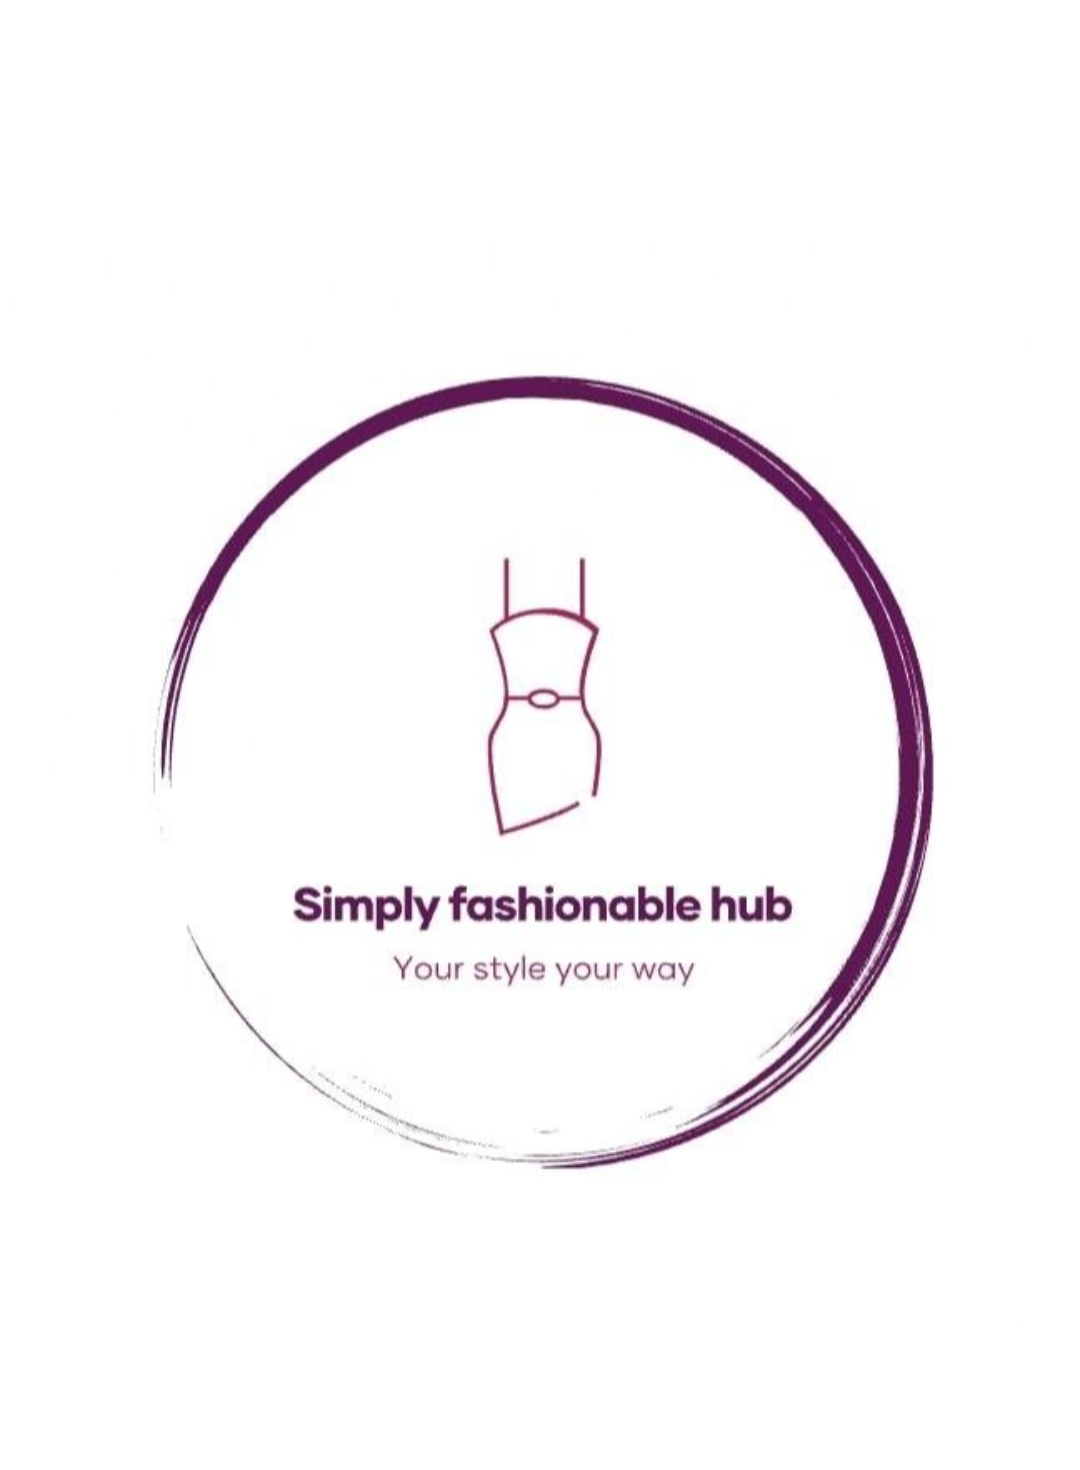 Fashionable Hub